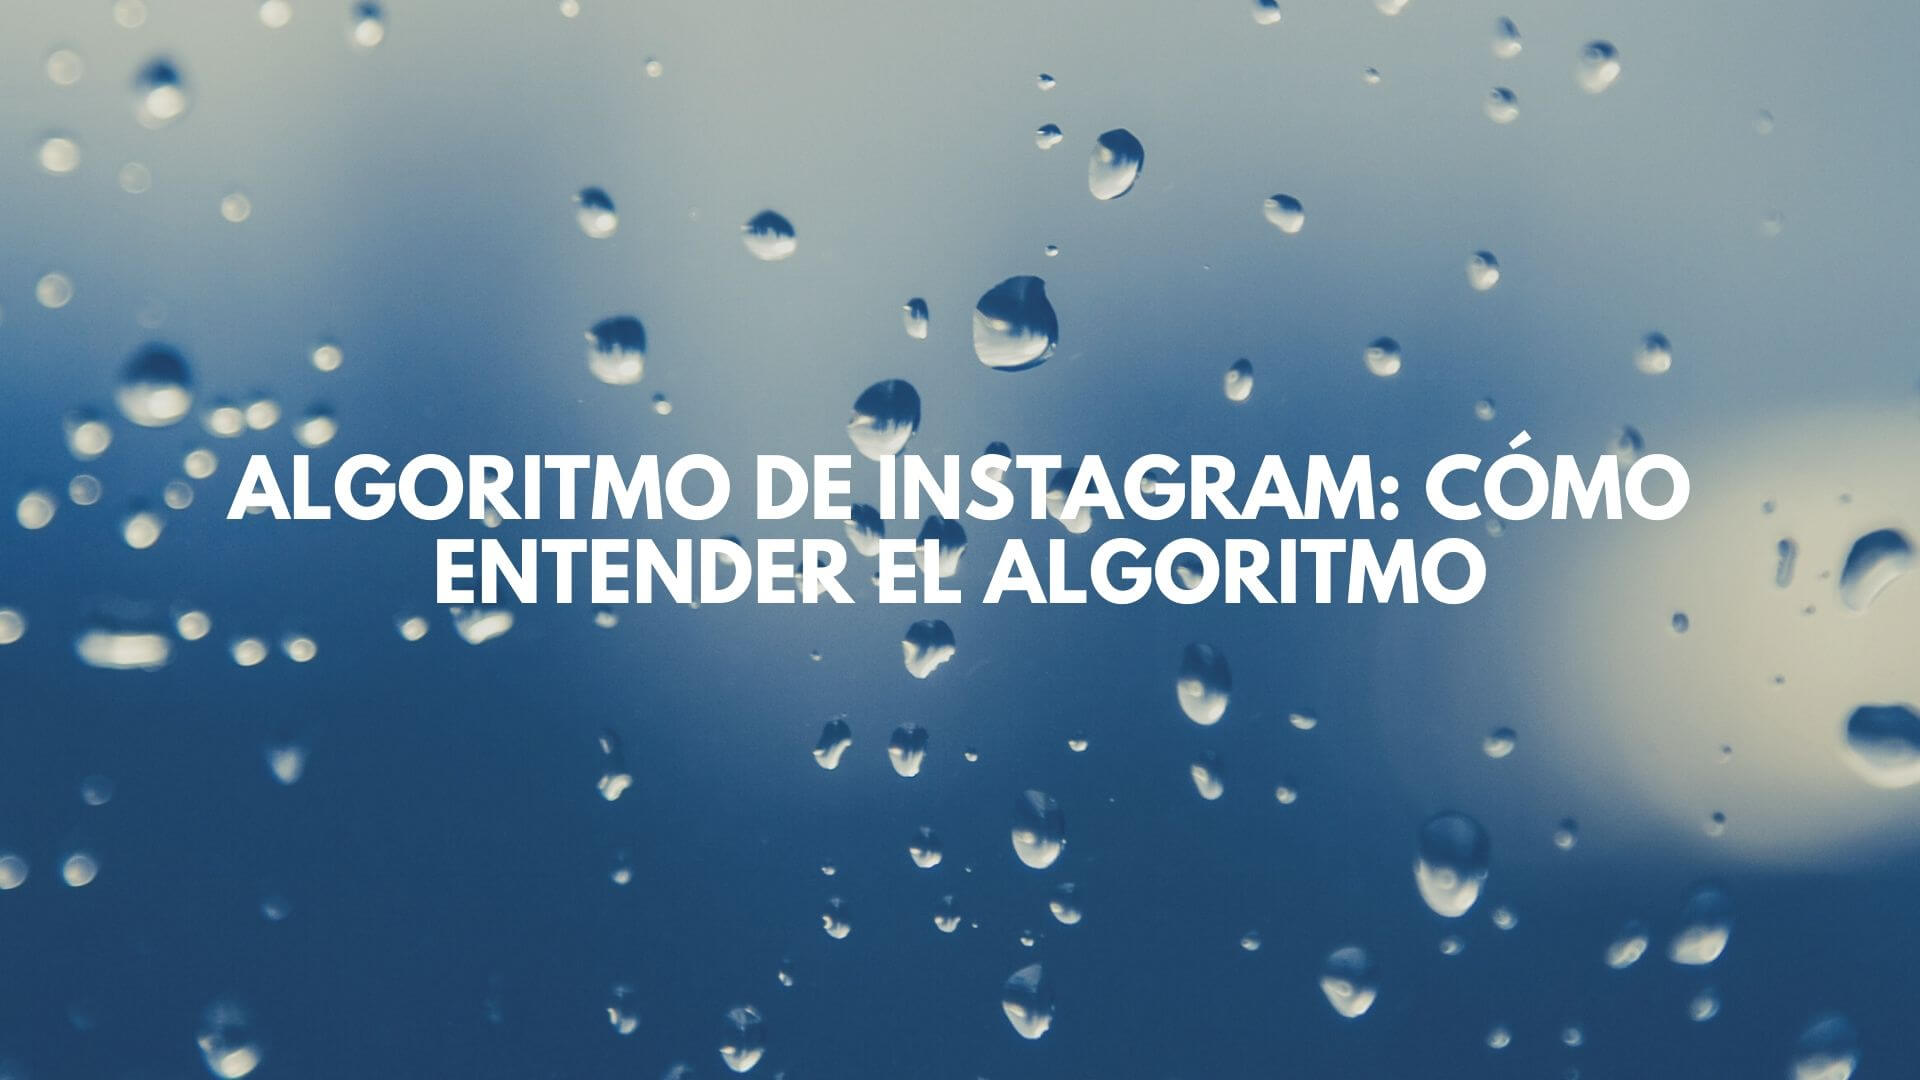 Las 3 claves para entender el algoritmo de Instagram